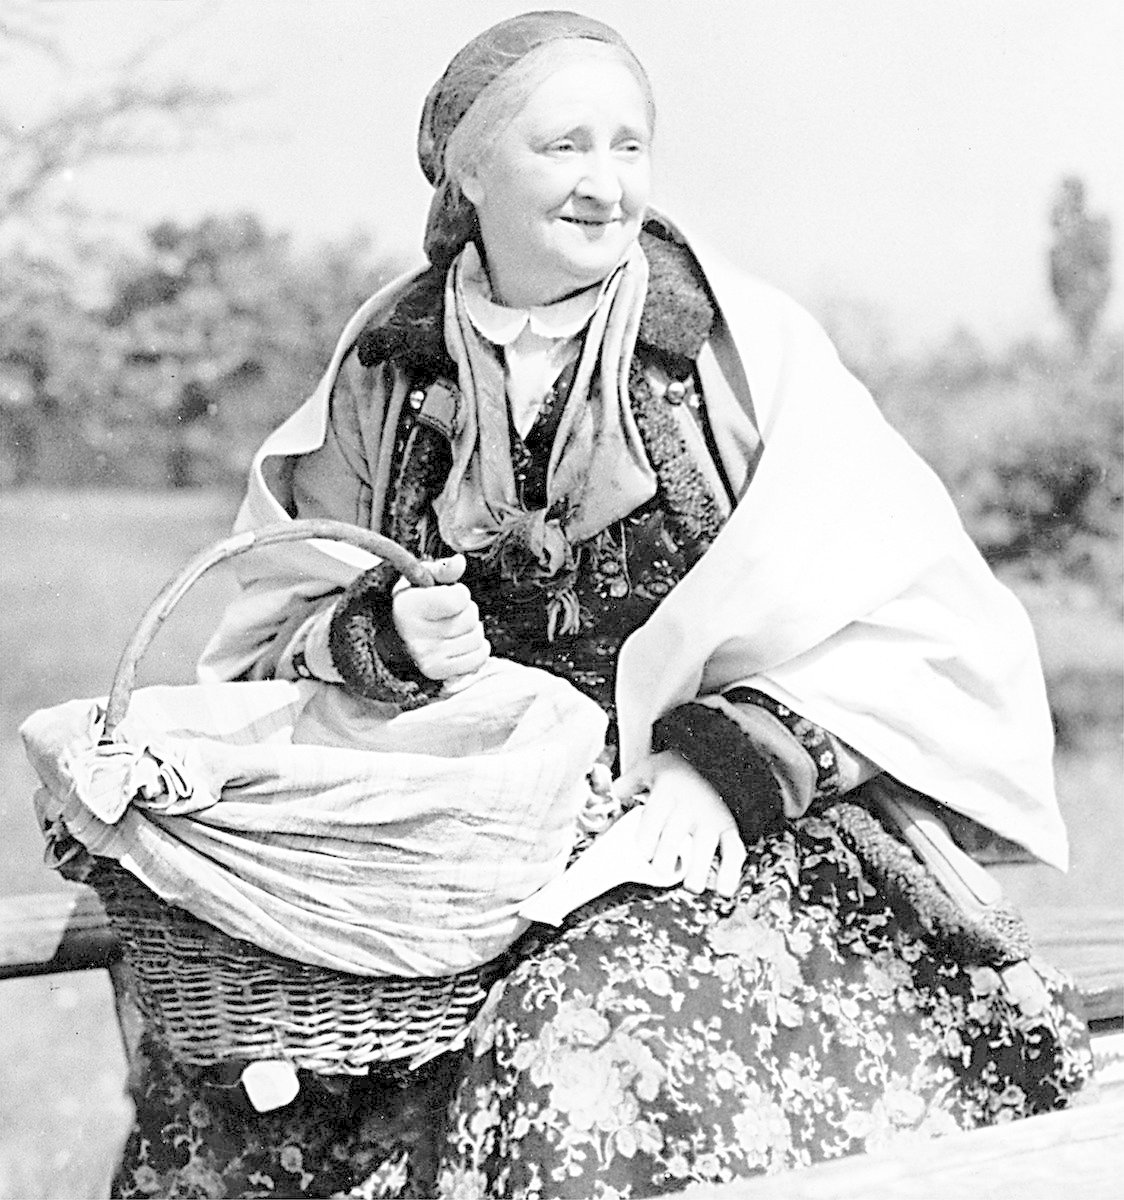 Terezie Brzková v roli babičky (Babička, 1940)